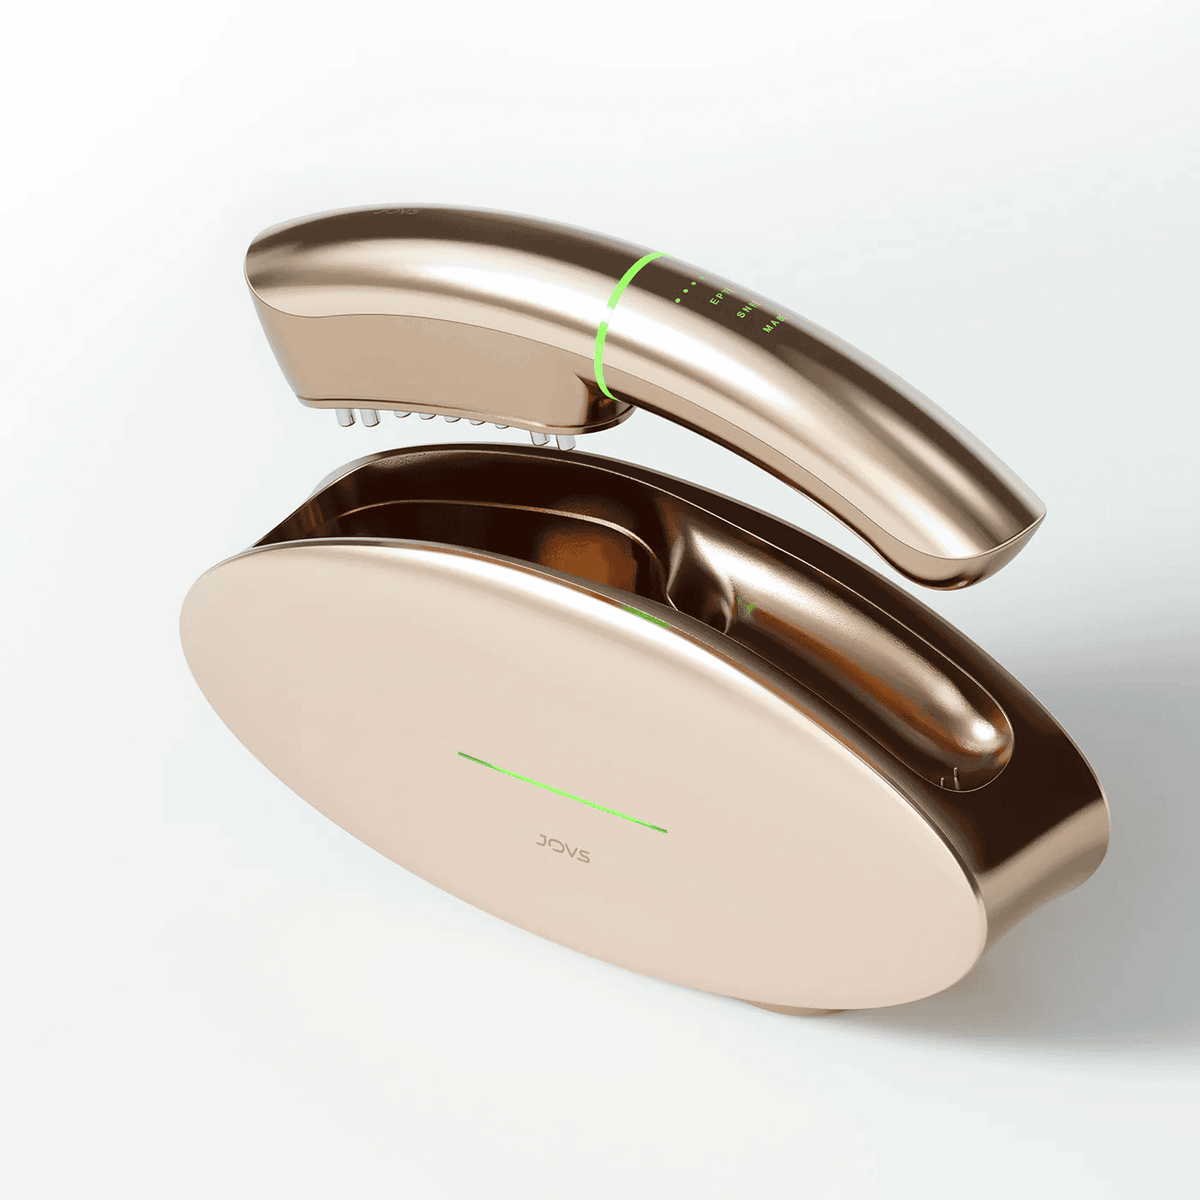 【回贈大禮】JOVS Slimax Microcurrent Full-body Anti-aging Device 超膜刀提拉多合一美容儀 豪華版